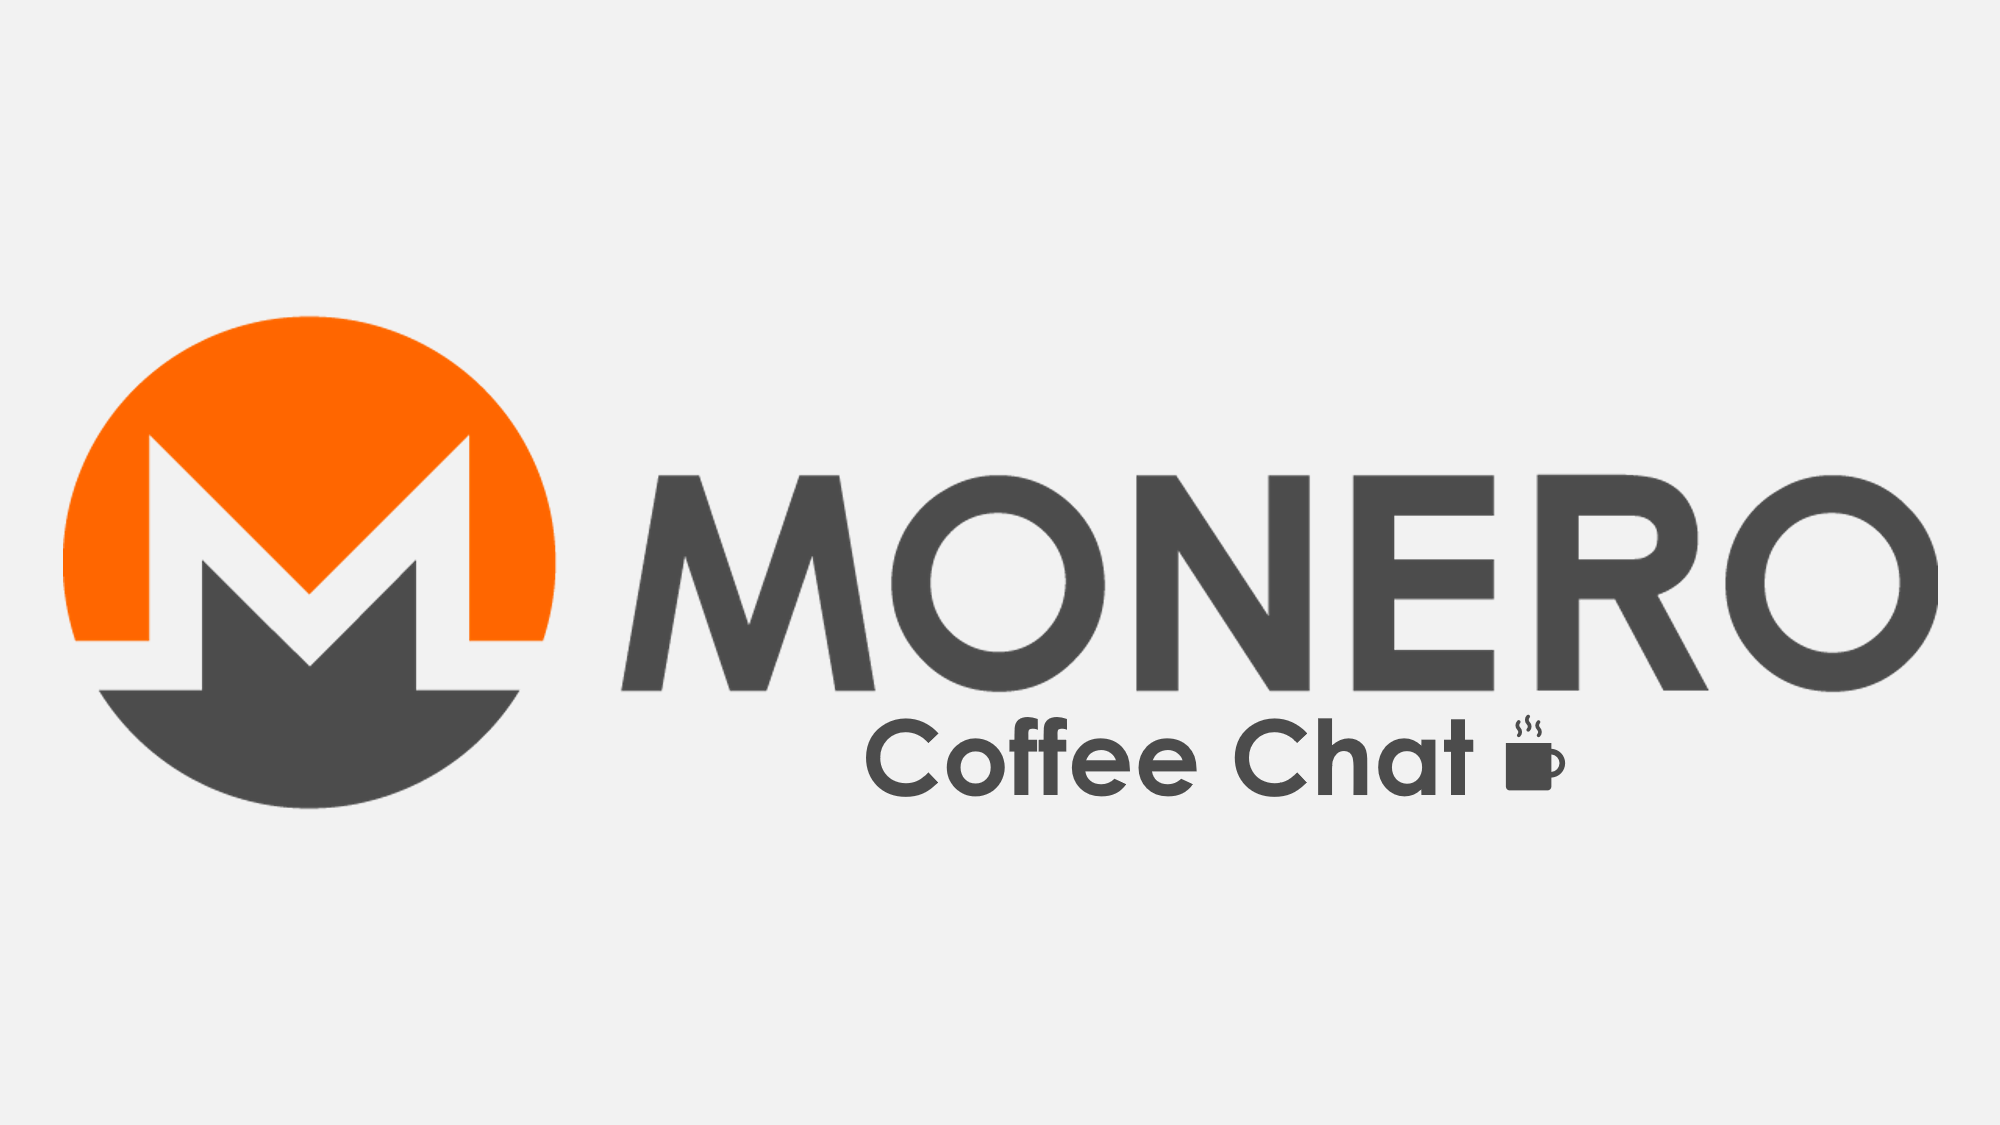 Monero Coffee Chat